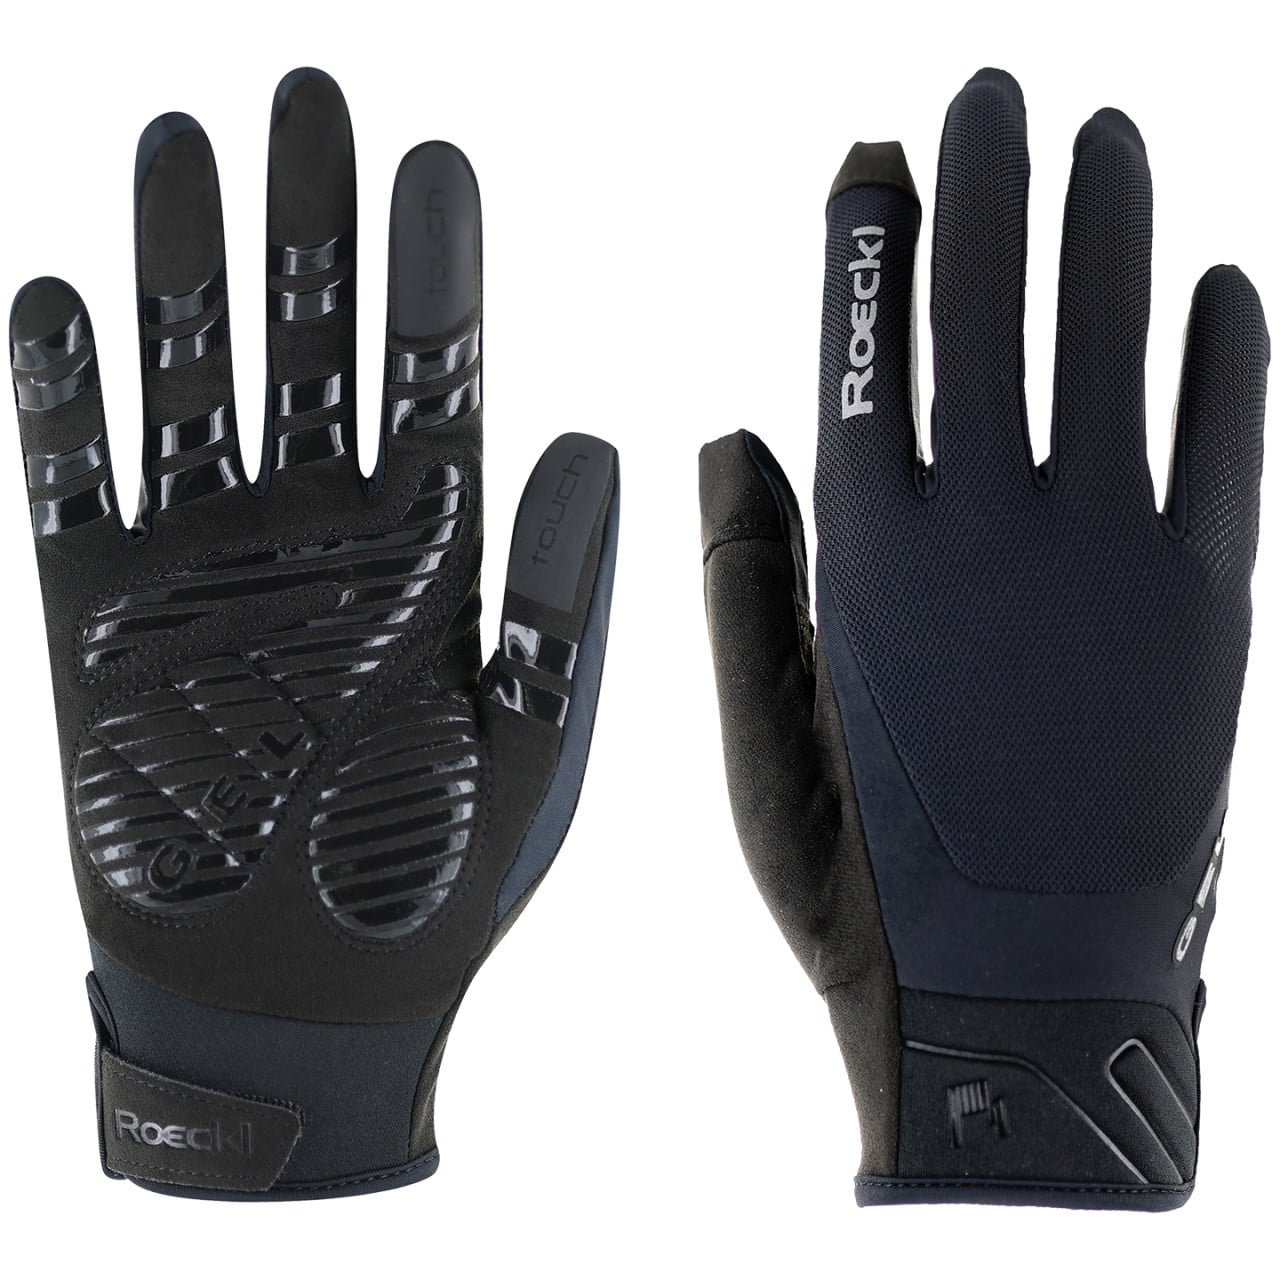 Mori 2 Full Finger Gloves